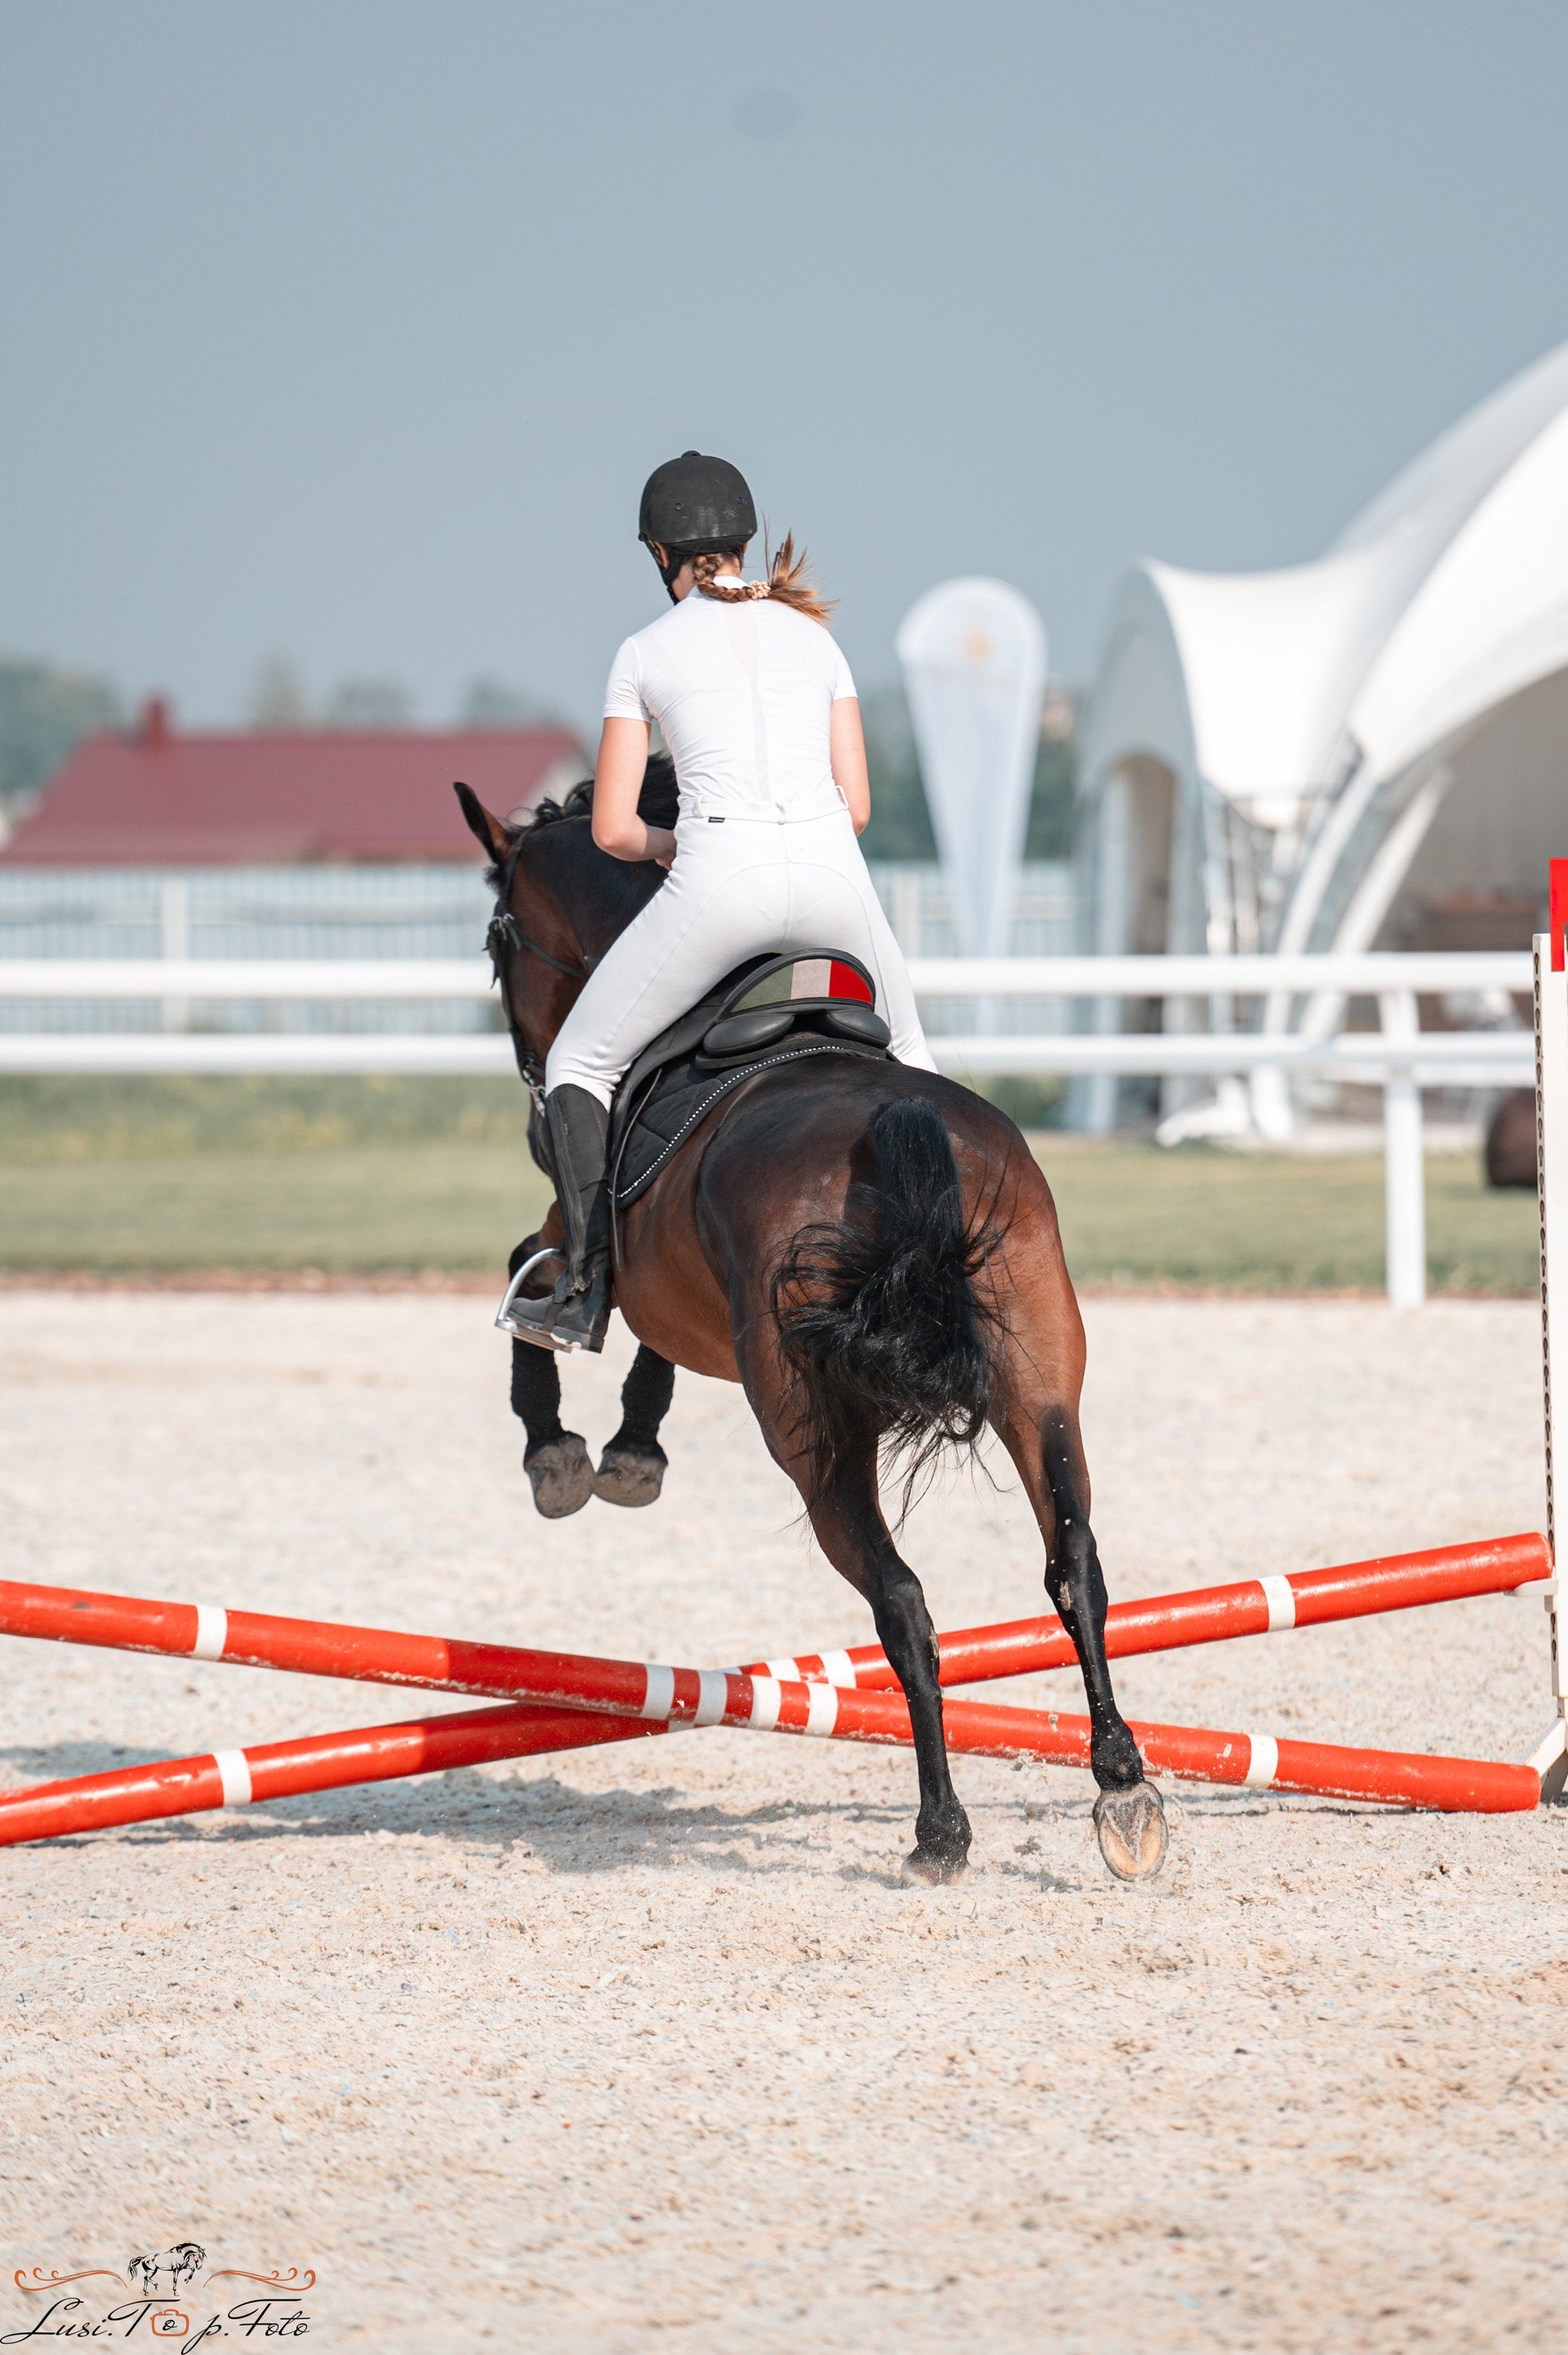 Тренер кск. Девушка занимается конным спортом. Айдолы которые занимаются конным спортом. Конкурная Узда без лошади.